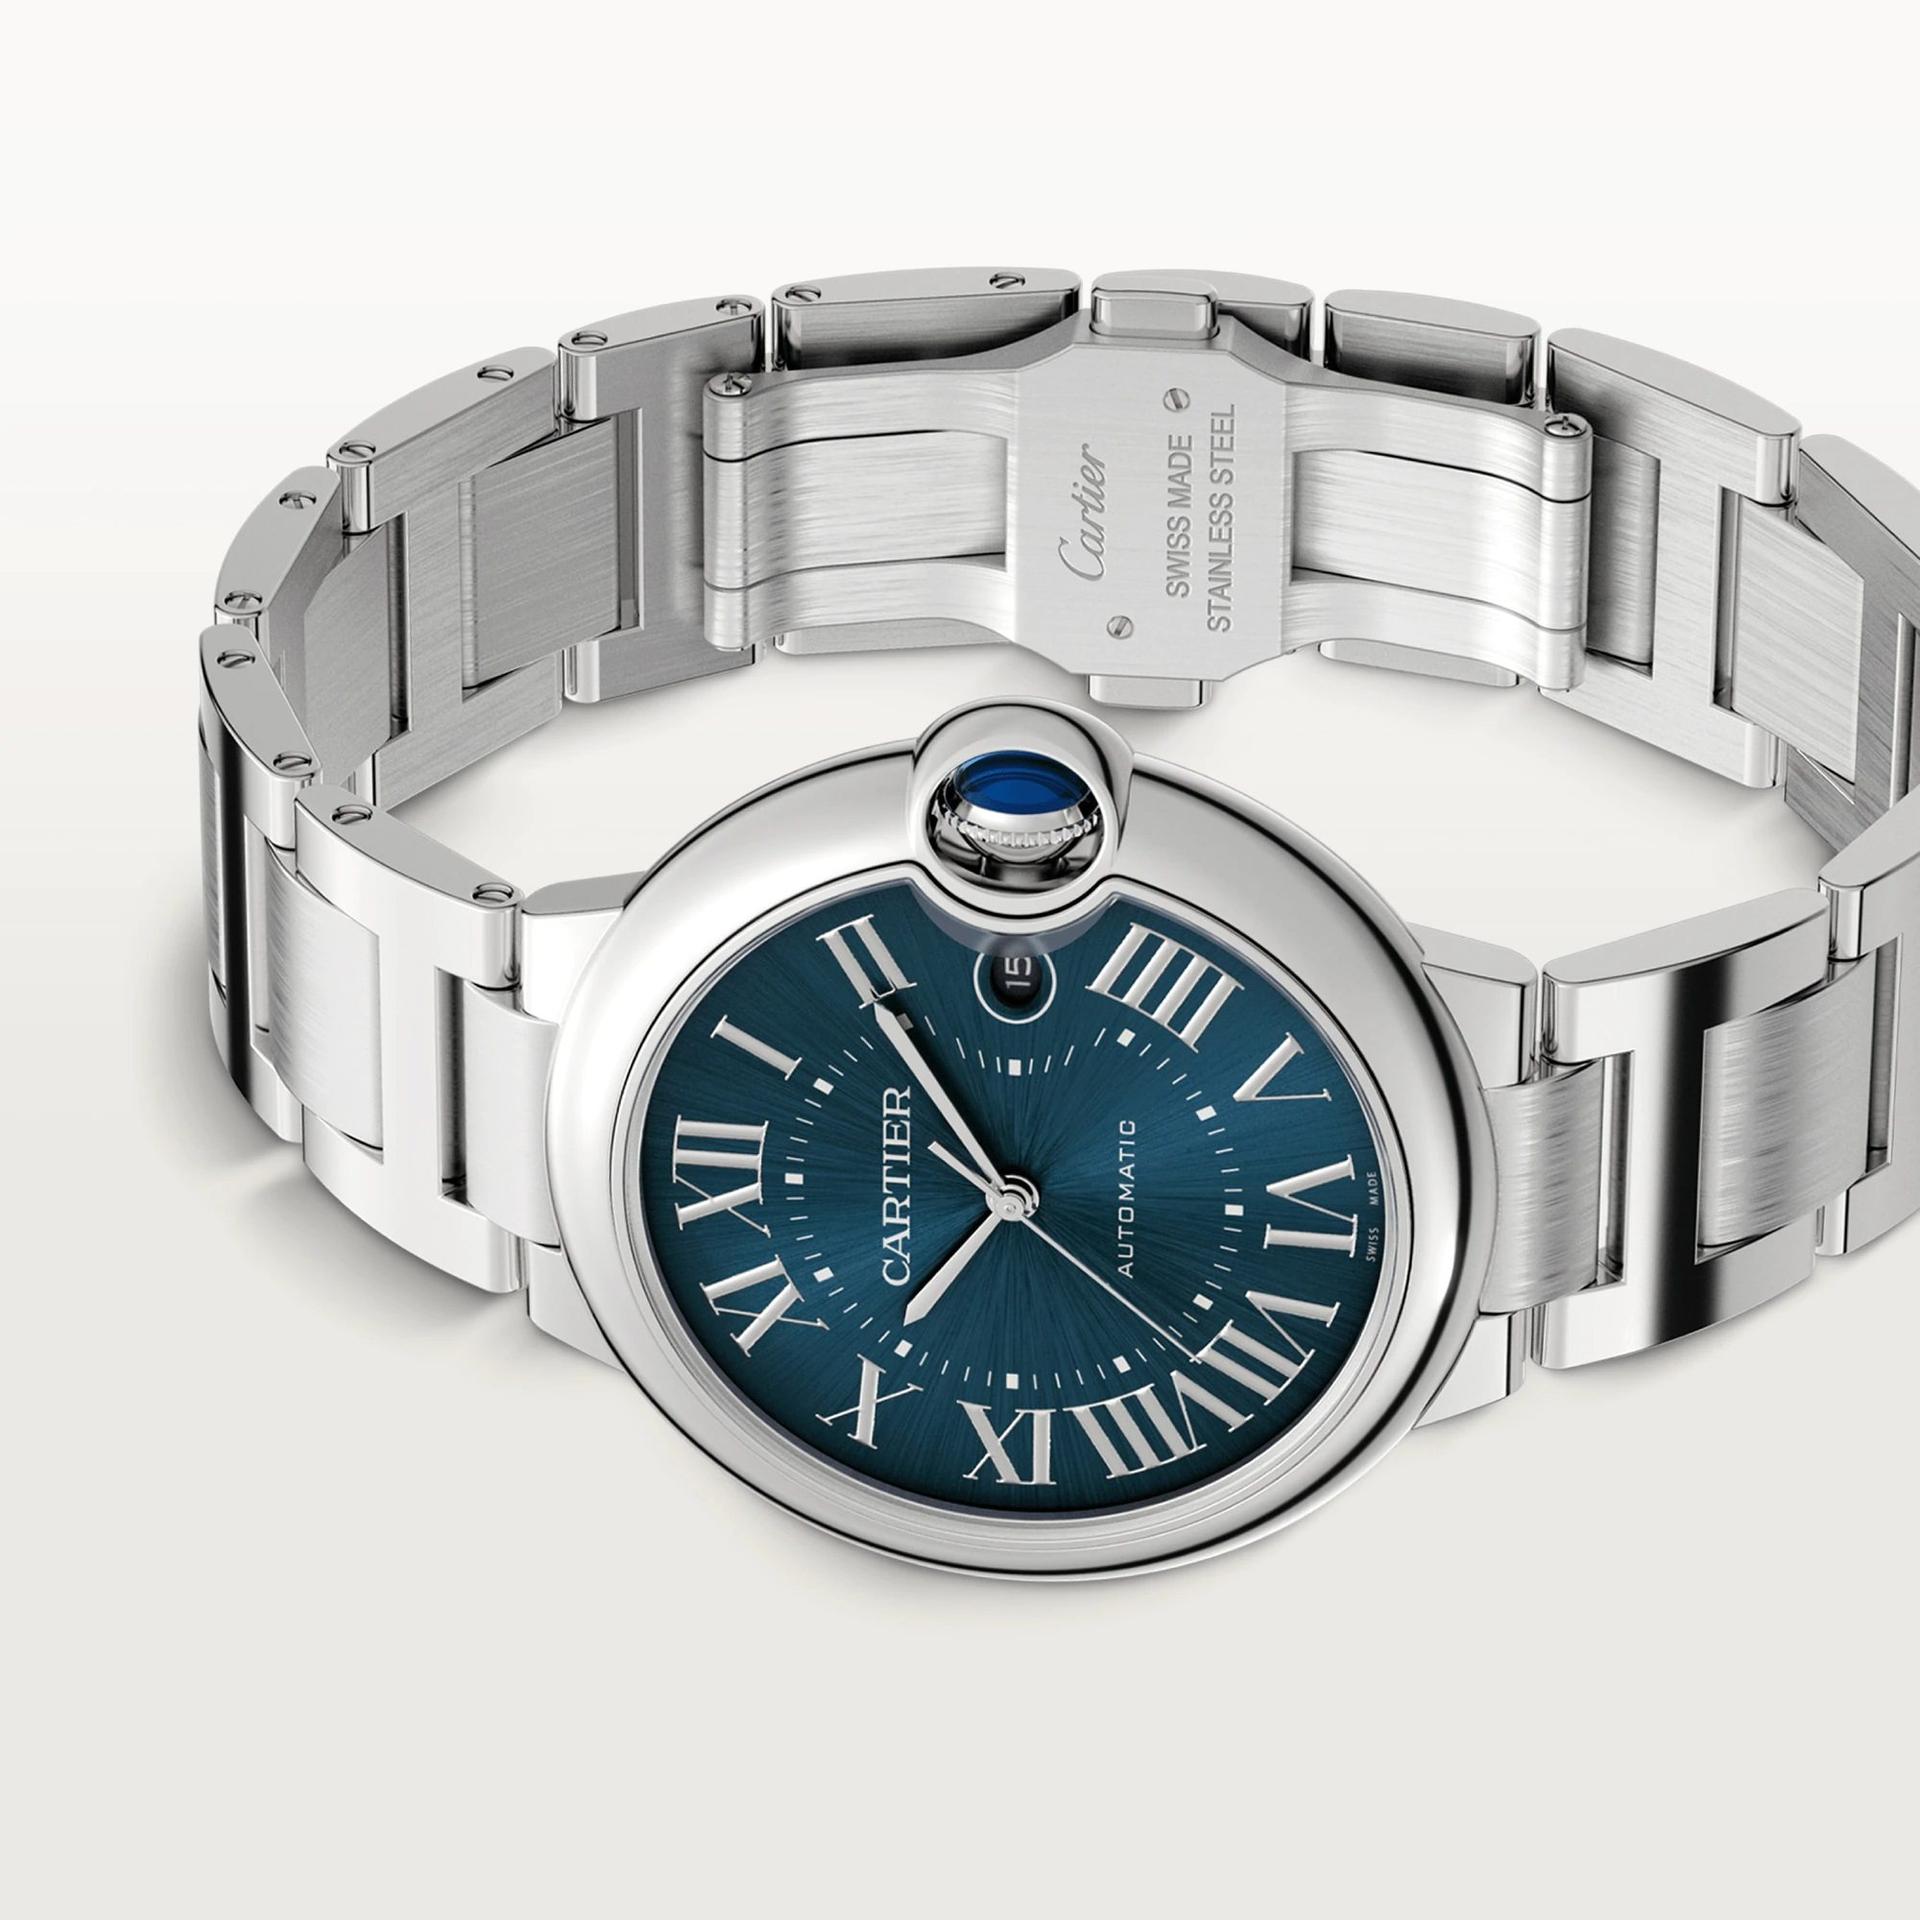 Ballon Bleu de Cartier Watch, Blue Sunray-Brushed Dial, 40mm
